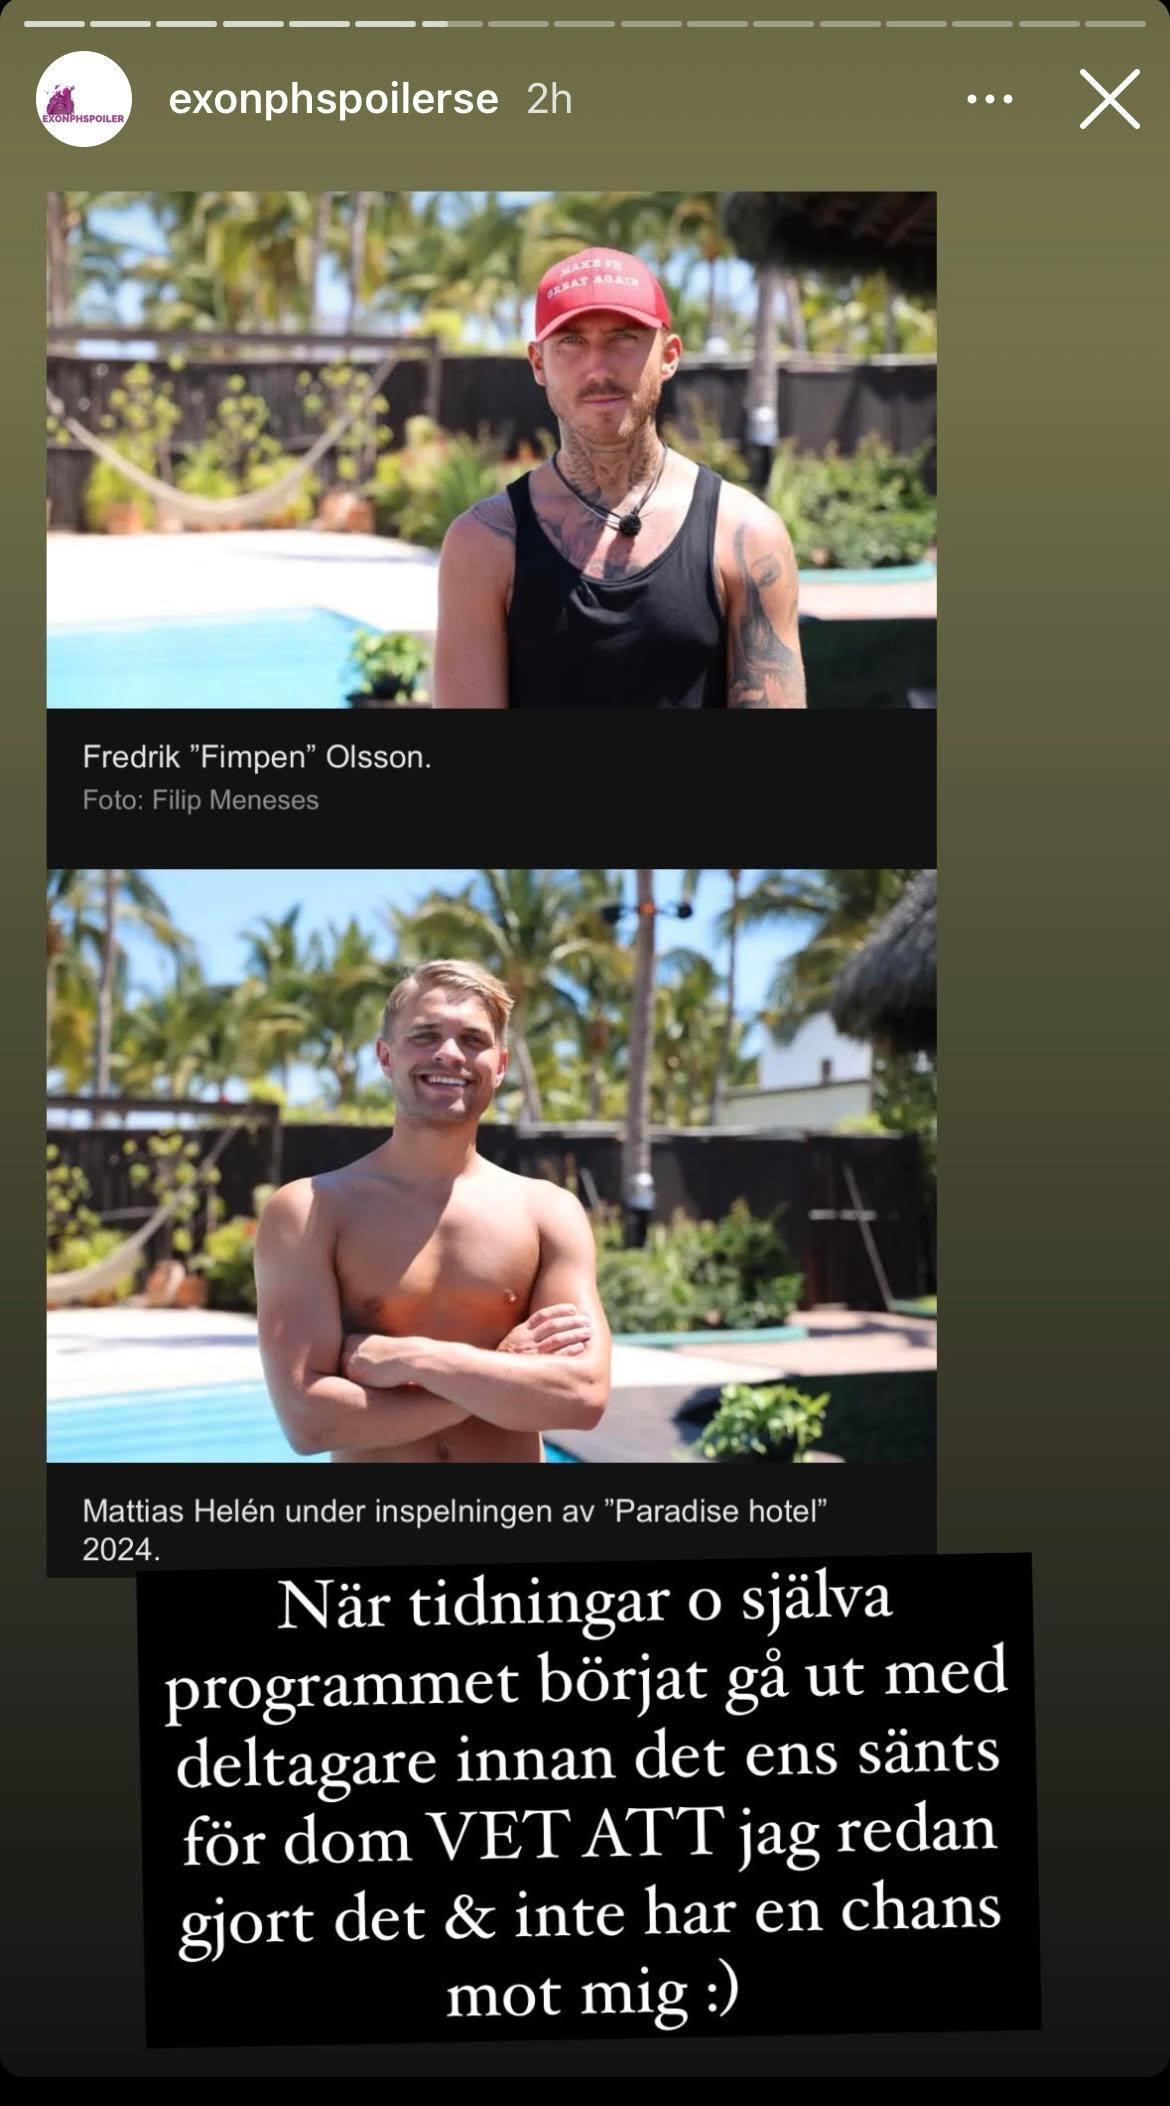 Nessa Elie, exonphspoilerse, reagerade efter att Aftonbladet kunde bekräfta att ”all stars”-deltagarna Mattias Helén och Fredrik ”Fimpen” Olsson deltar i nygamla ”Paradise hotel”.